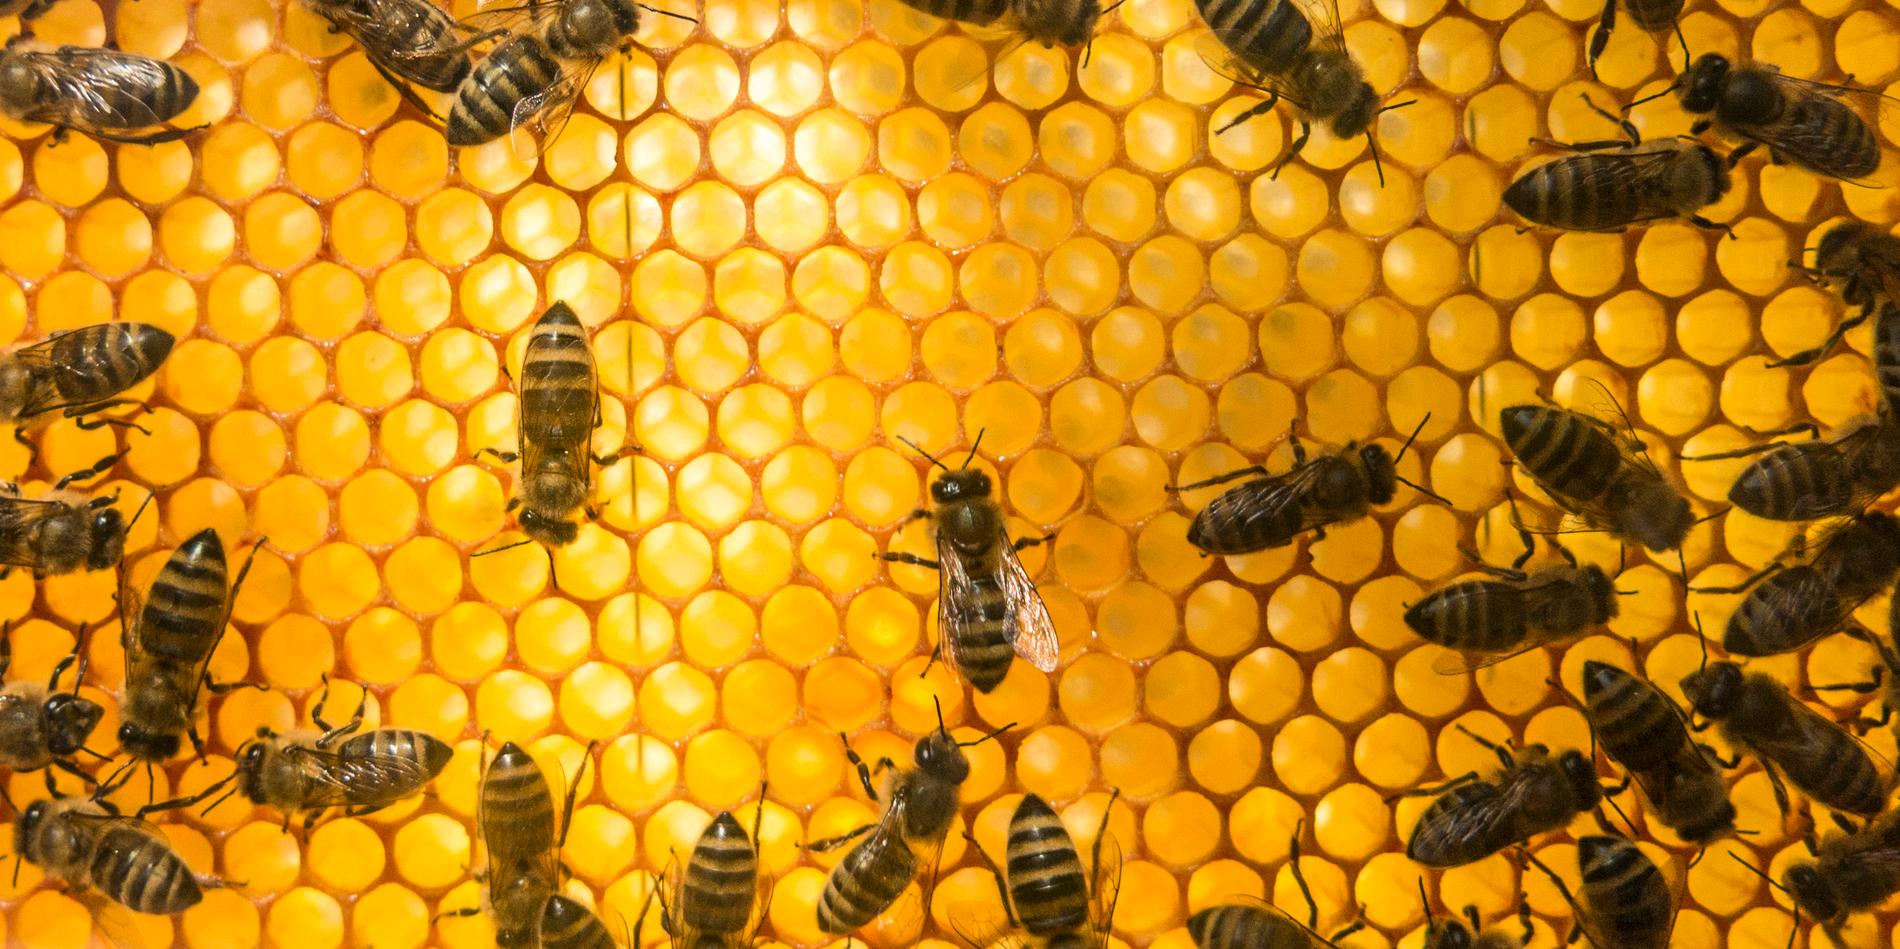 25000 bin har flyttat in i en bikupa på kommunhusets tak 